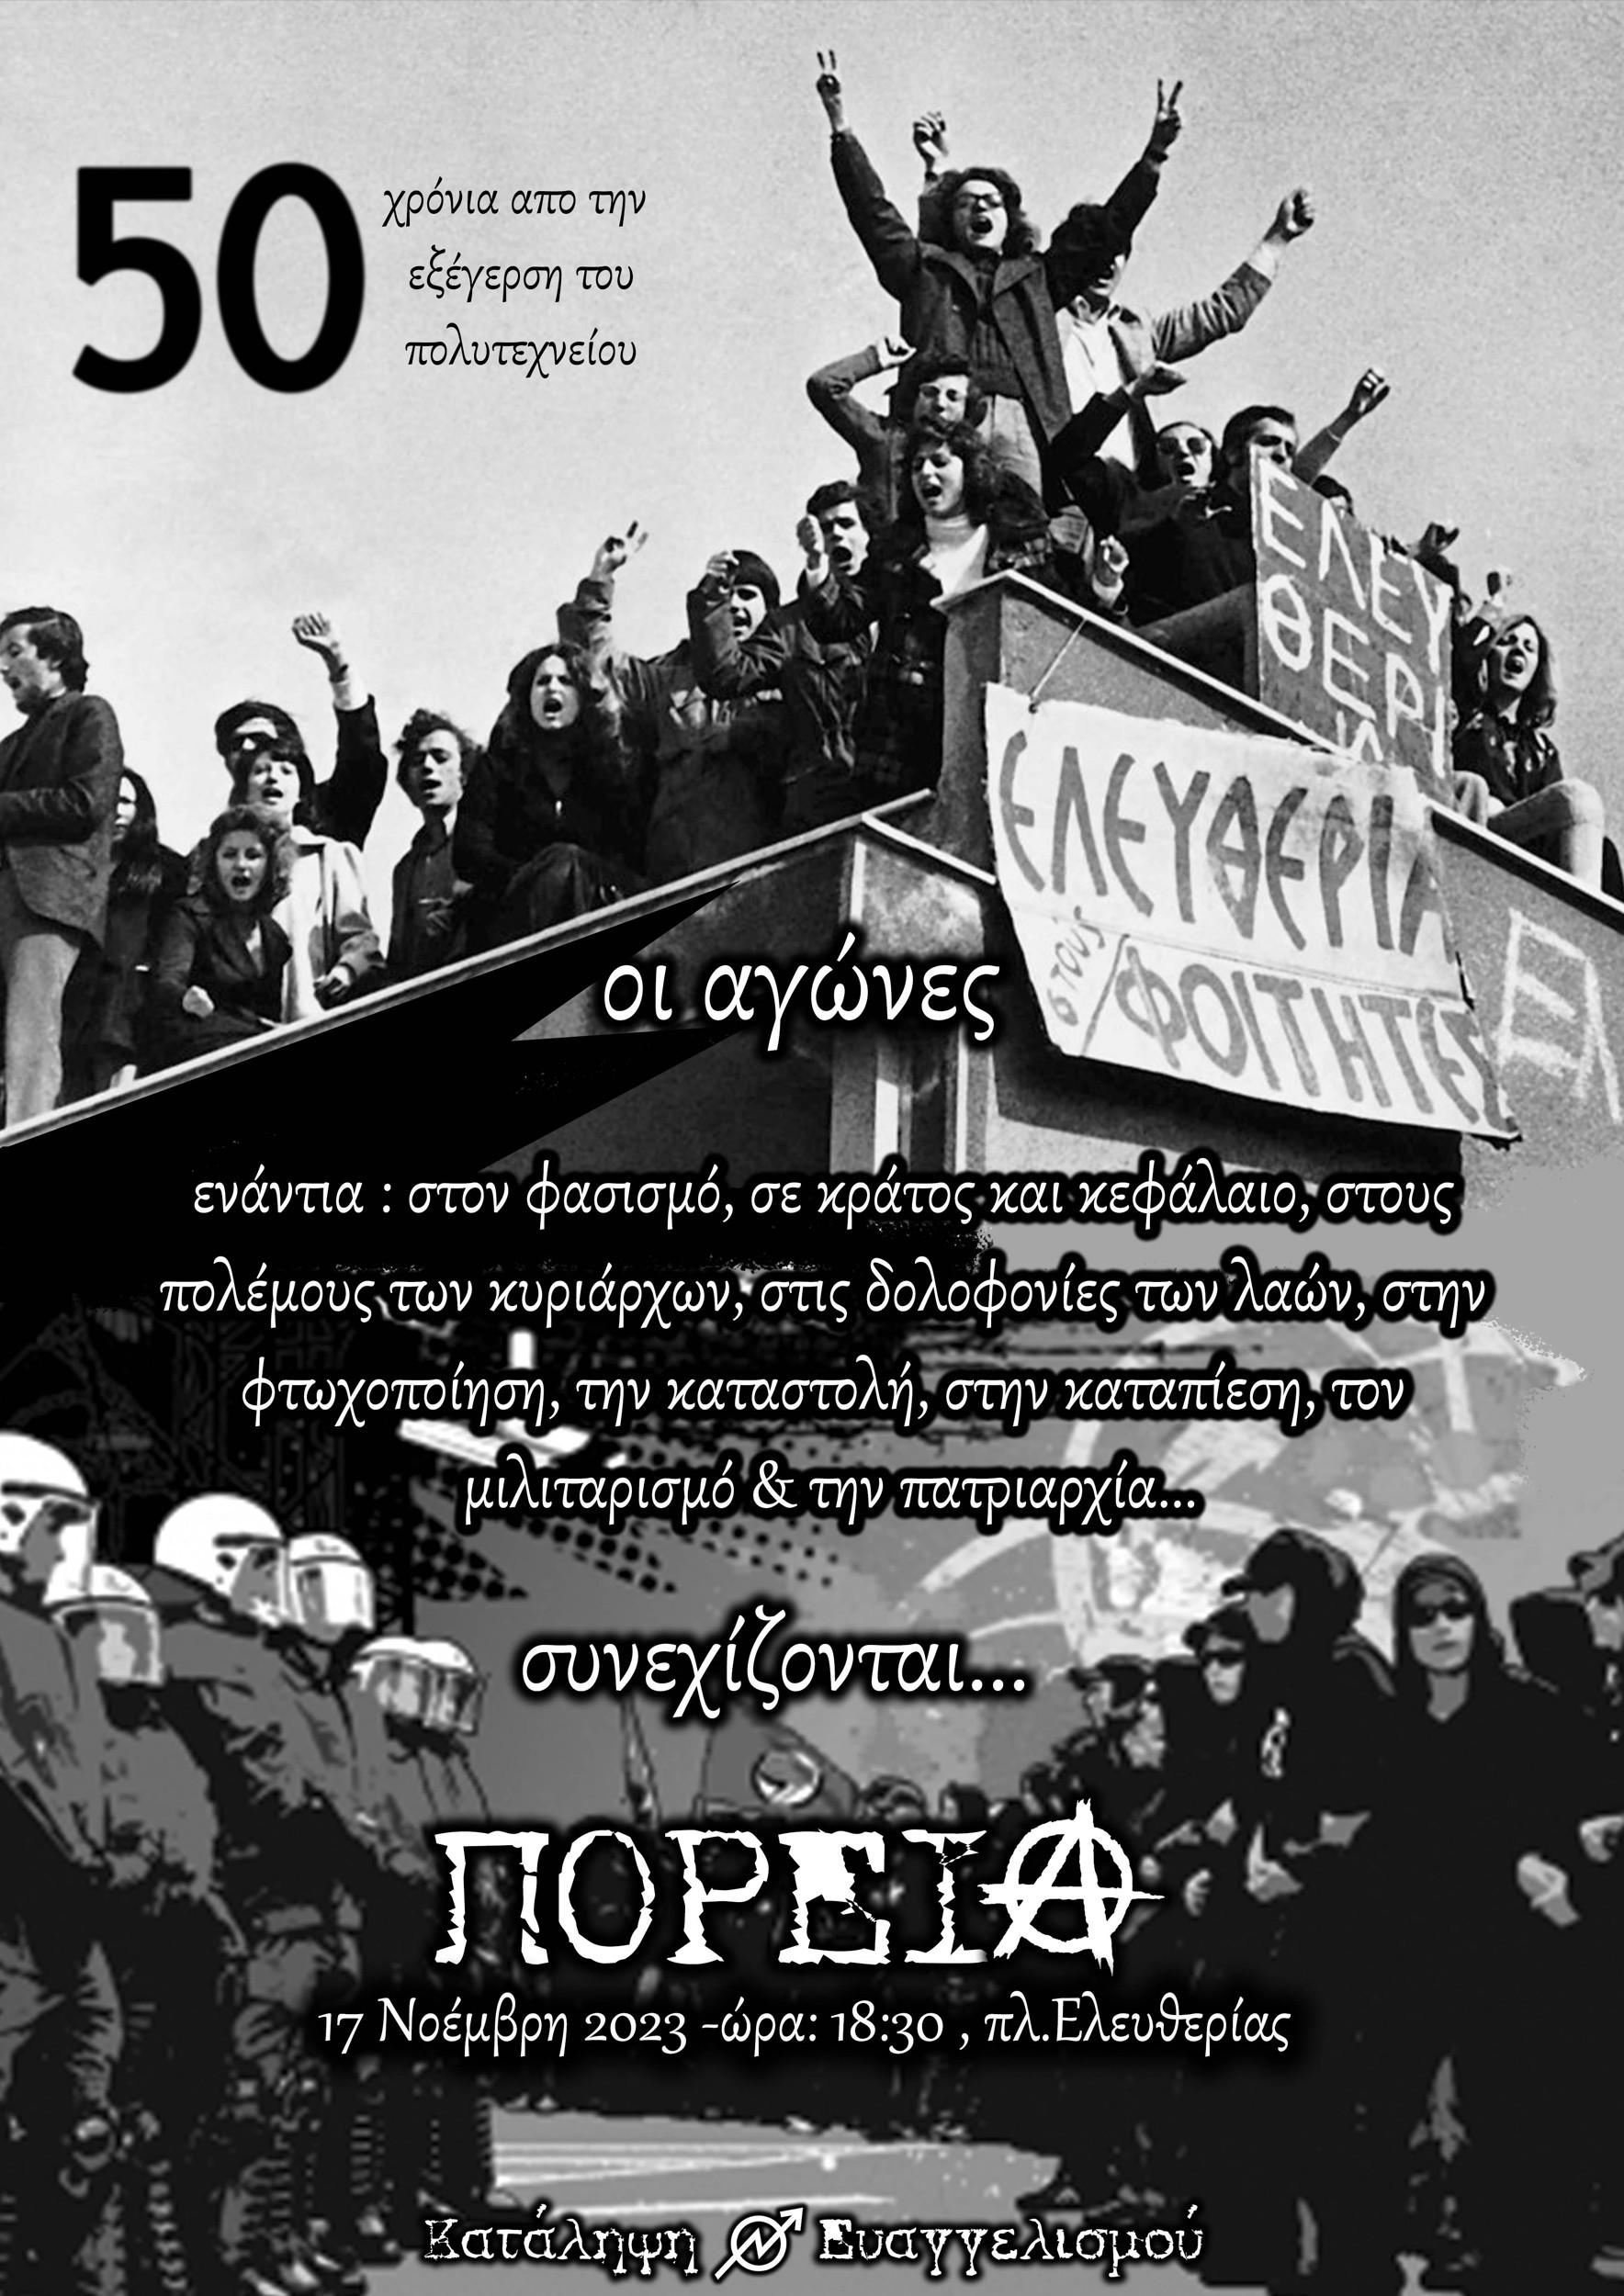 Ηράκλειο: 50 χρόνια απο την εξέγερση του Πολυτεχνείου – Πορεία